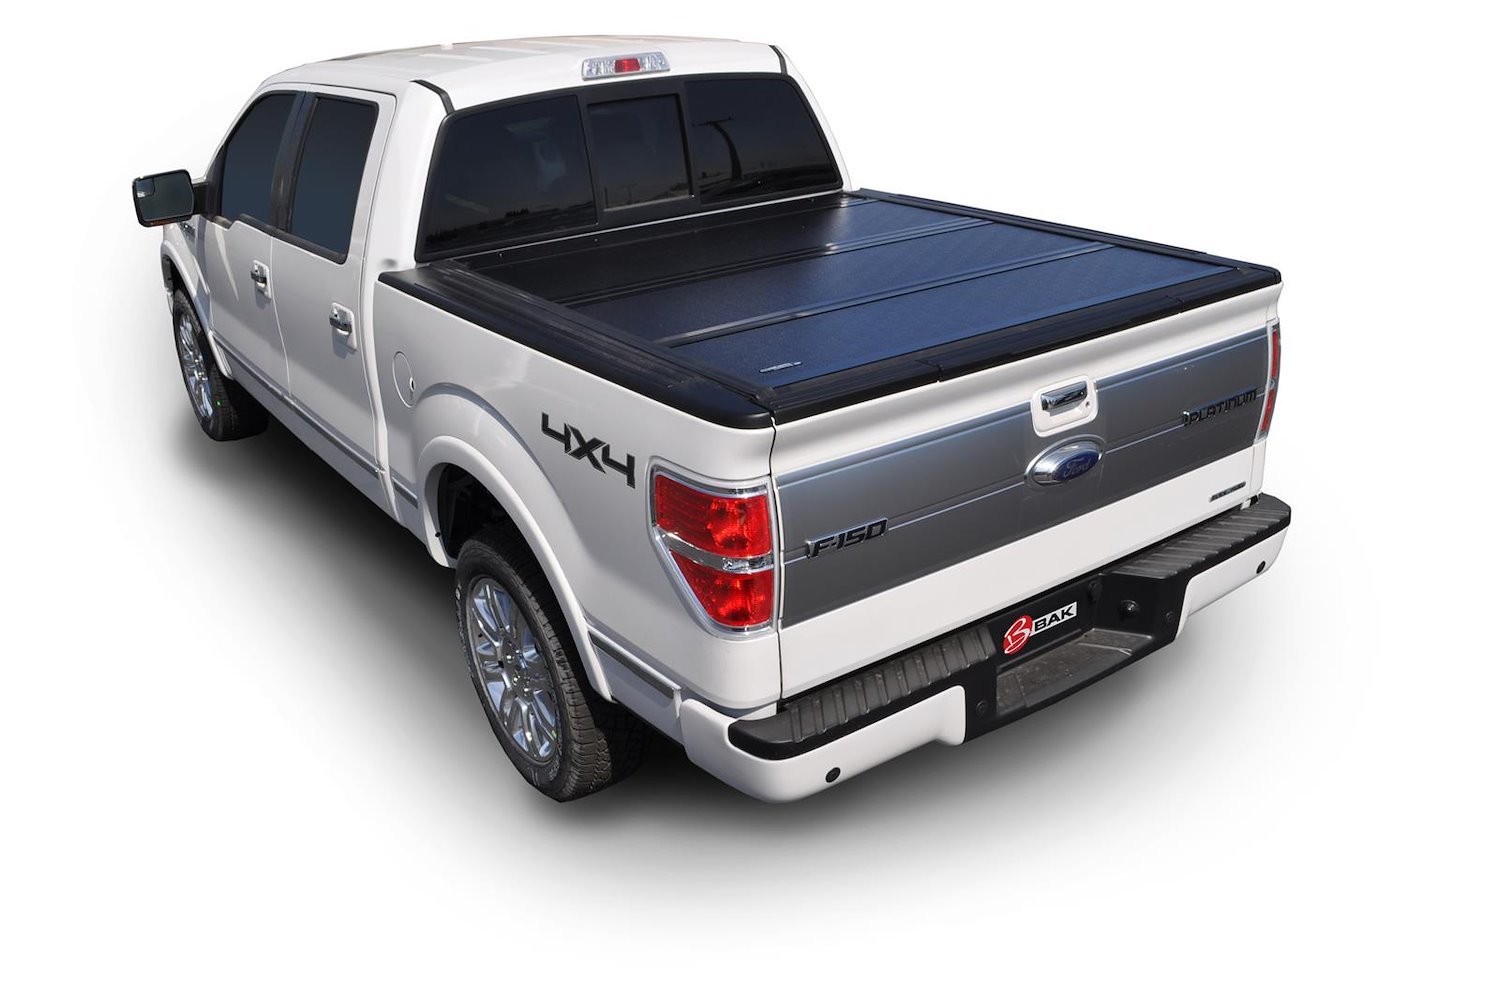 226305 BAKFlip G2 for 94-11 Ford Ranger 6.1 ft. Bed, Hard Folding Cover Style [Black Finish]